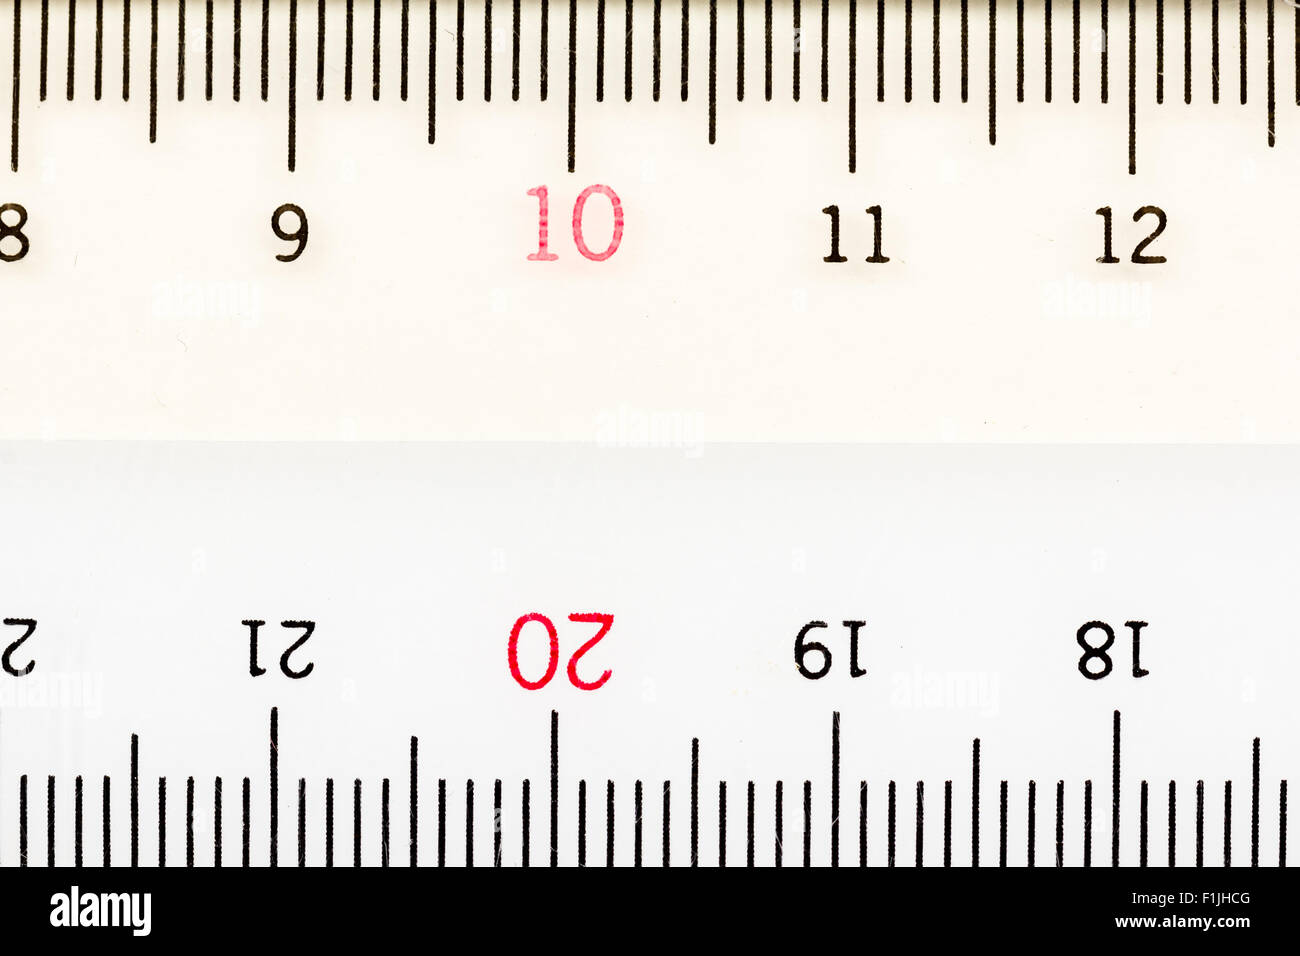 Cm 12 12.6 Centimeters